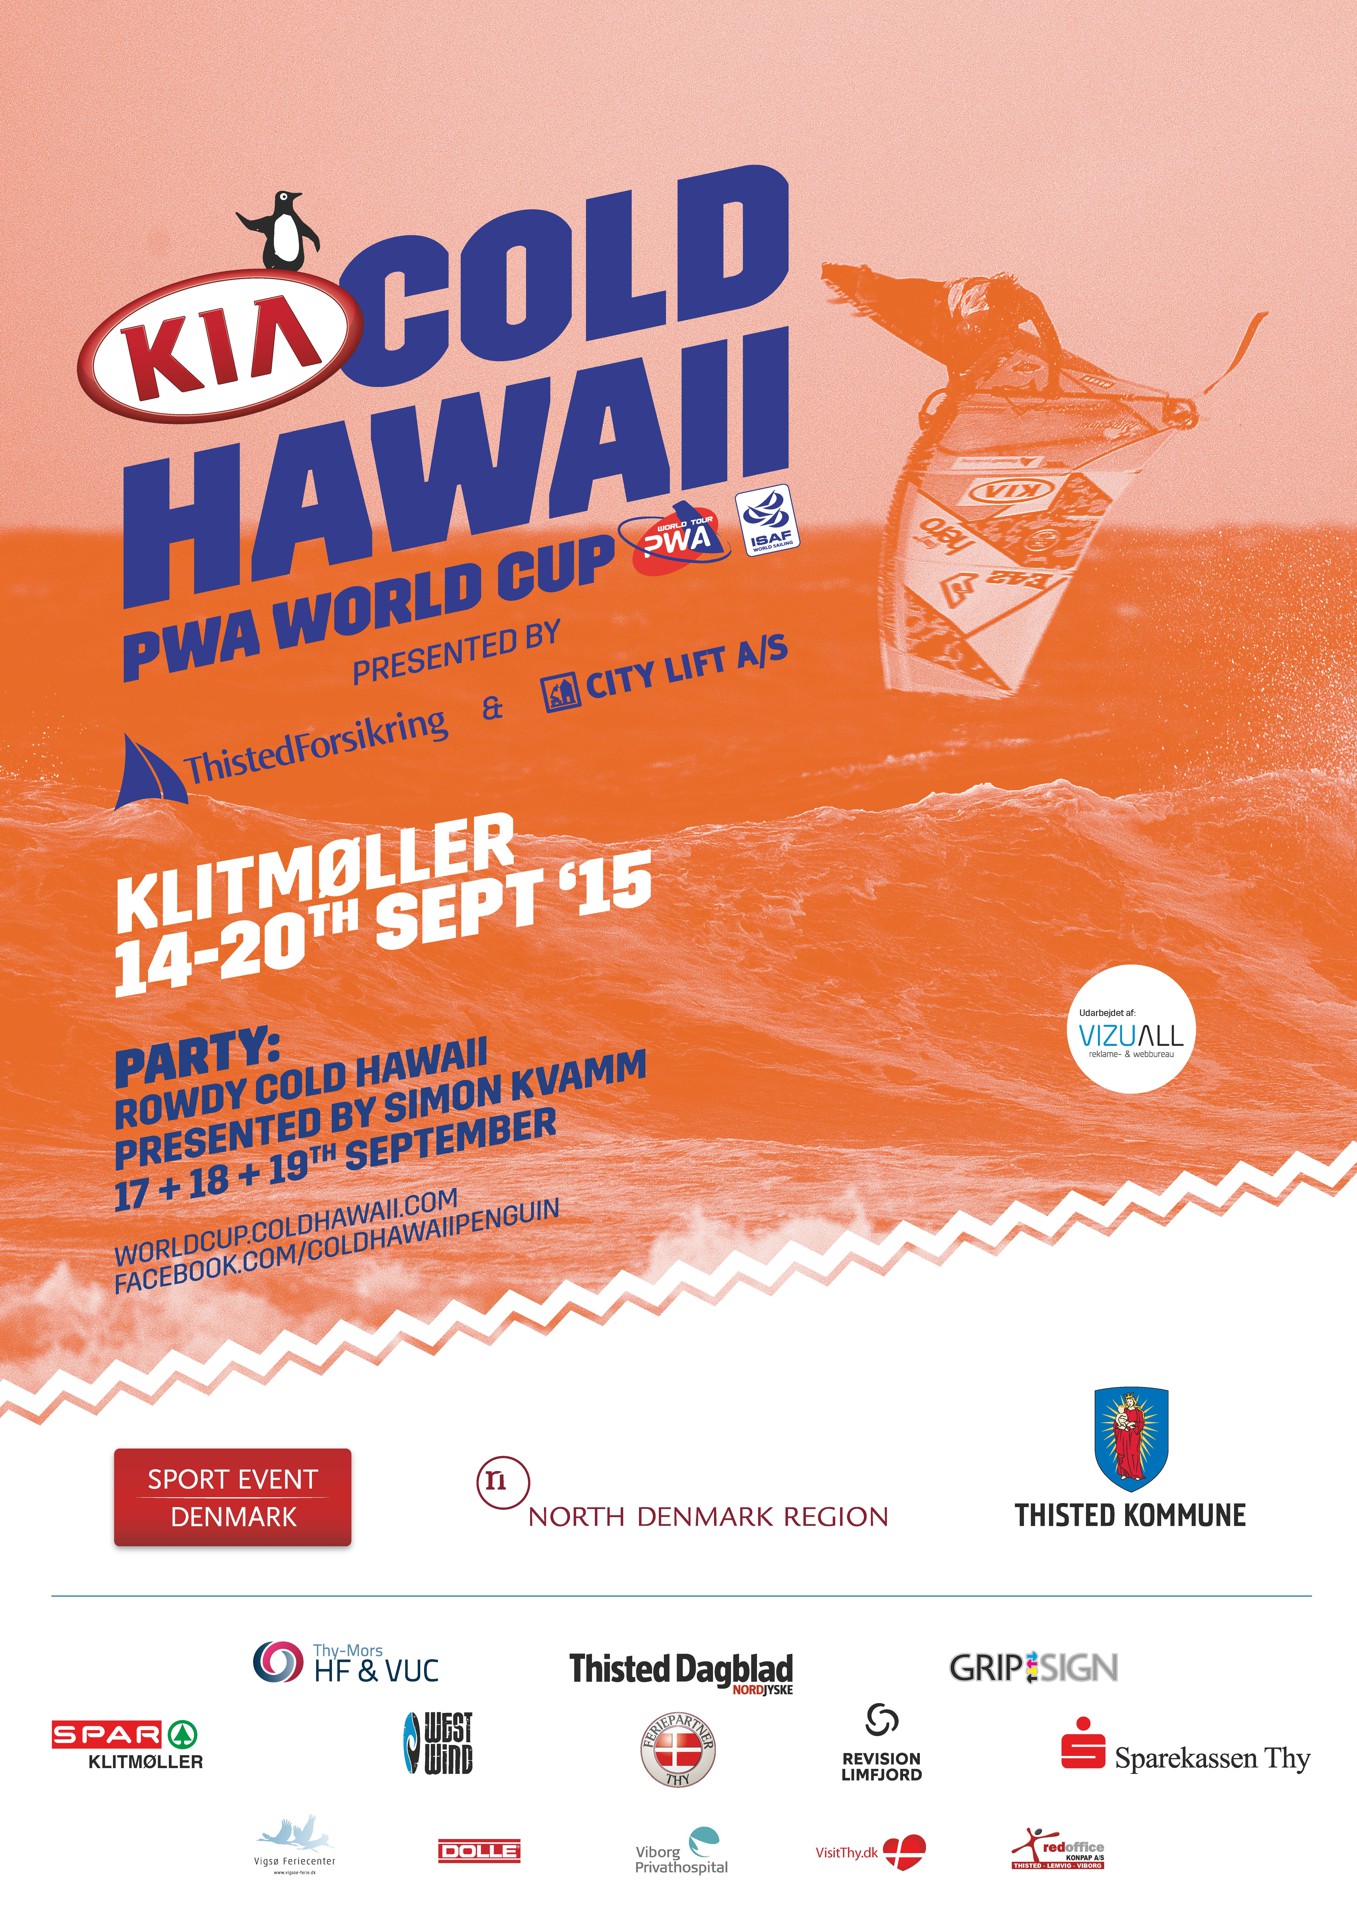 Kia Cold Hawaii World cup, Klitmoller 2015